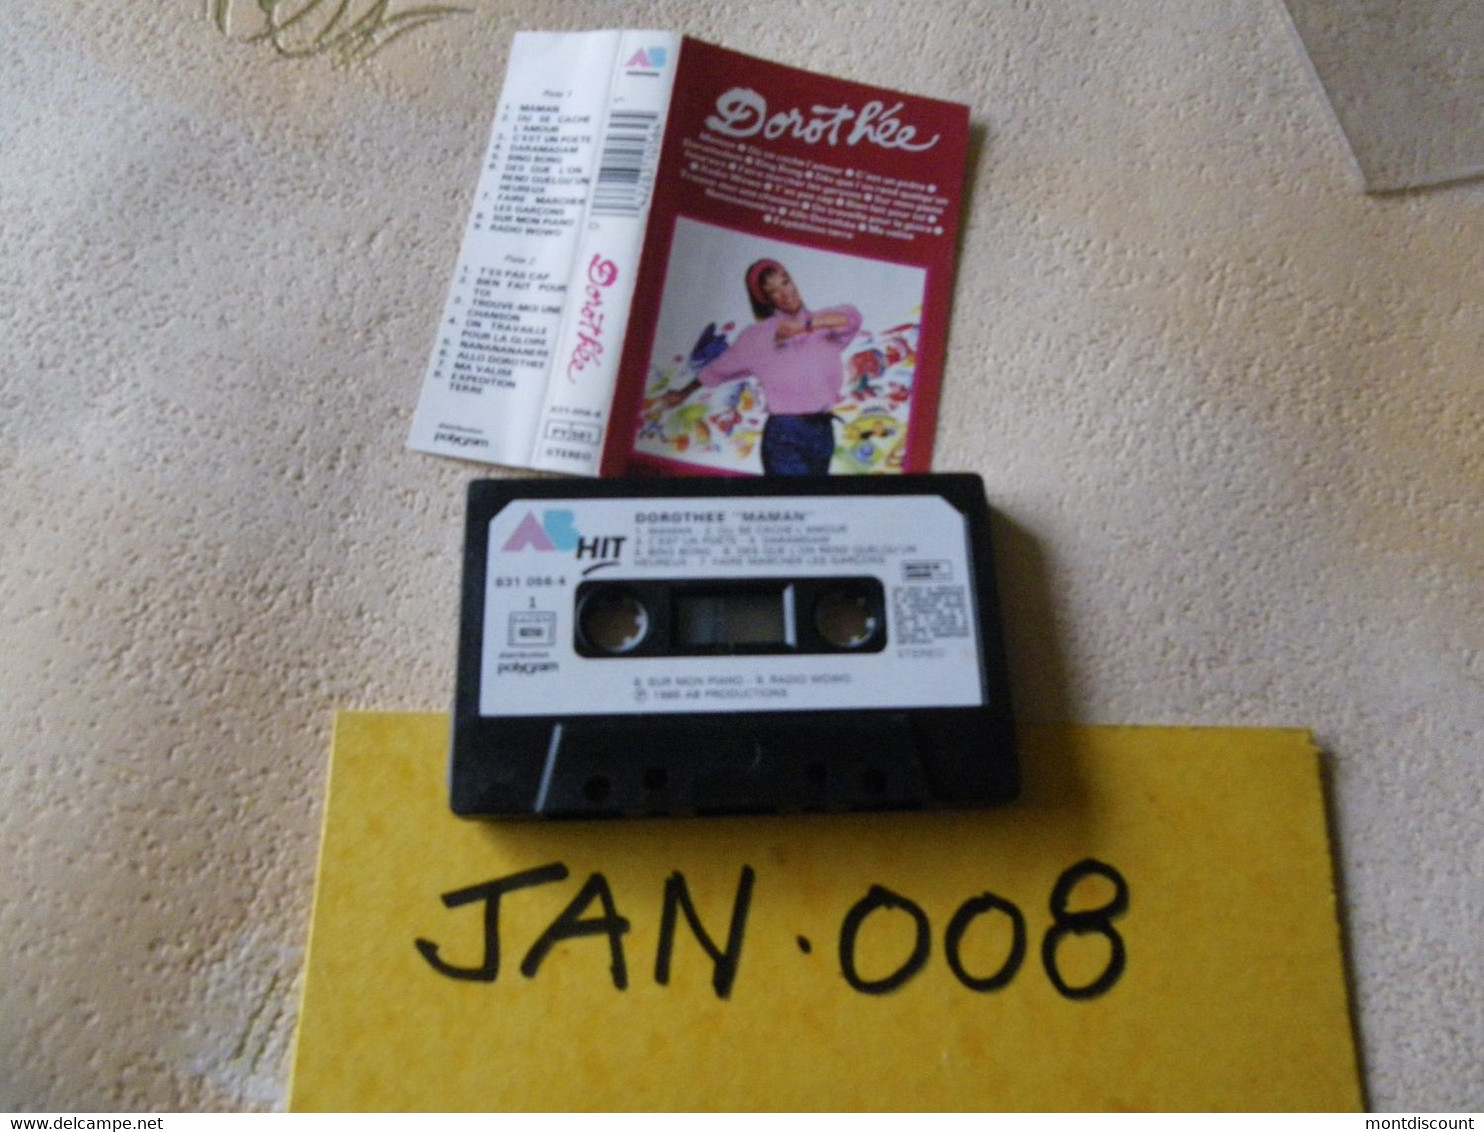 DOROTHEE (Dorothée) K7 AUDIO VOIR PHOTO...ET REGARDEZ LES AUTRES (PLUSIEURS) (JAN 008) - Cassettes Audio